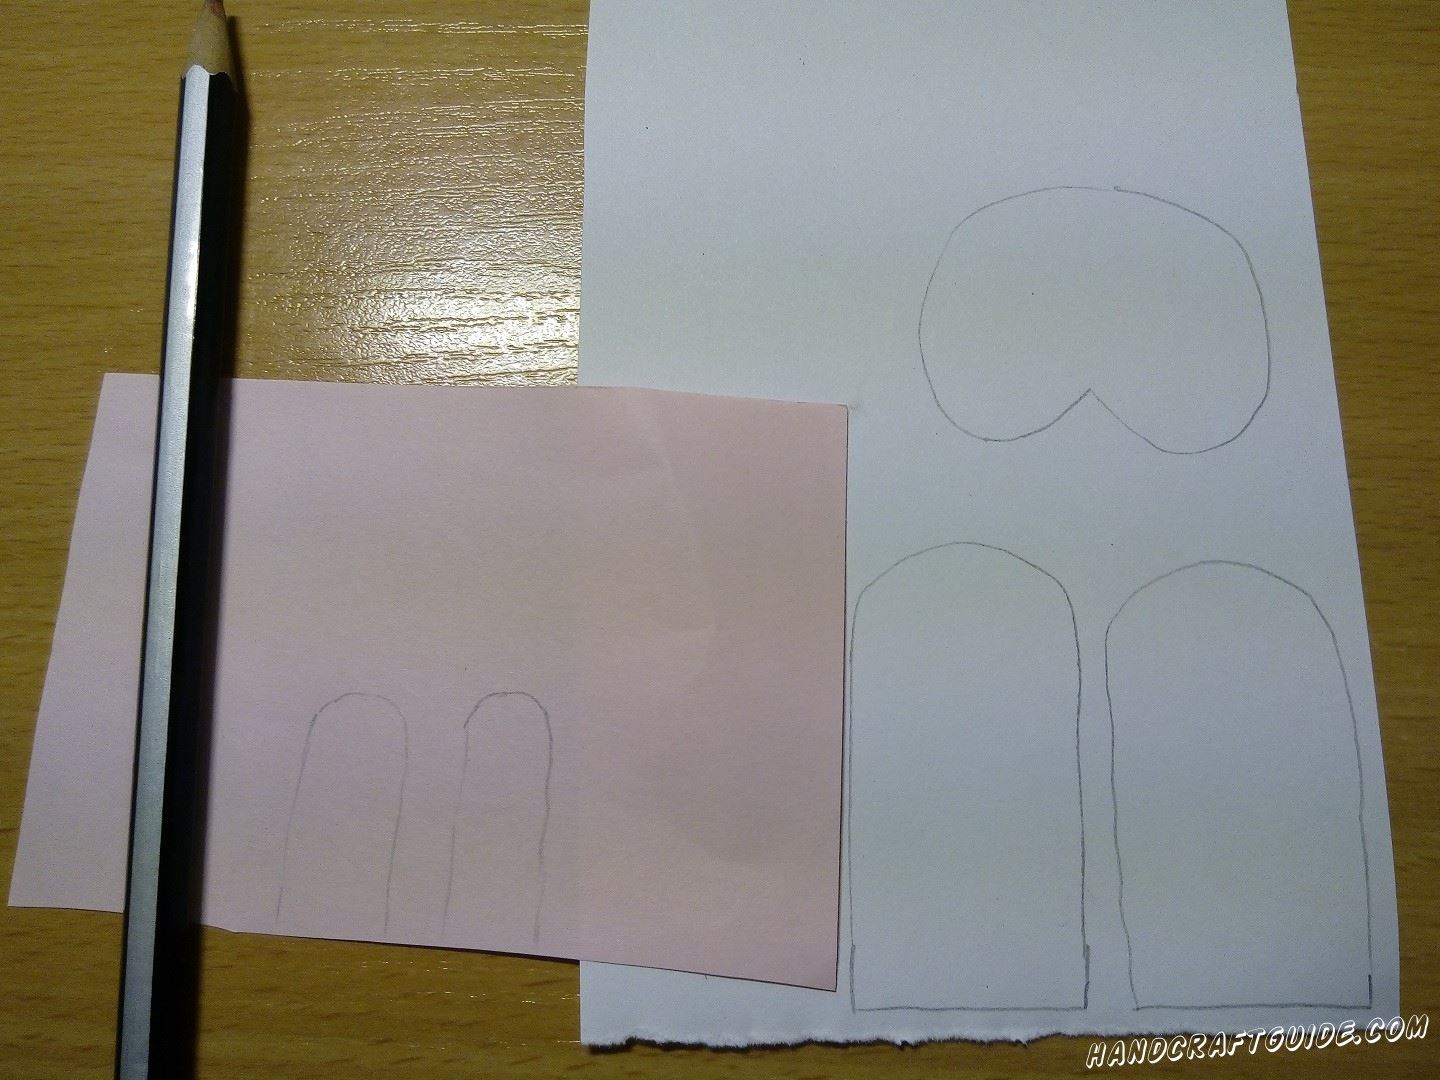 Далее на белой бумаге мы рисуем 2 ушка и подставочку под низ яичка, на которой мы нарисуем лапки . Также рисуем 2 вставочки на ушки из розовой бумаги. Вырезаем нарисованные детали